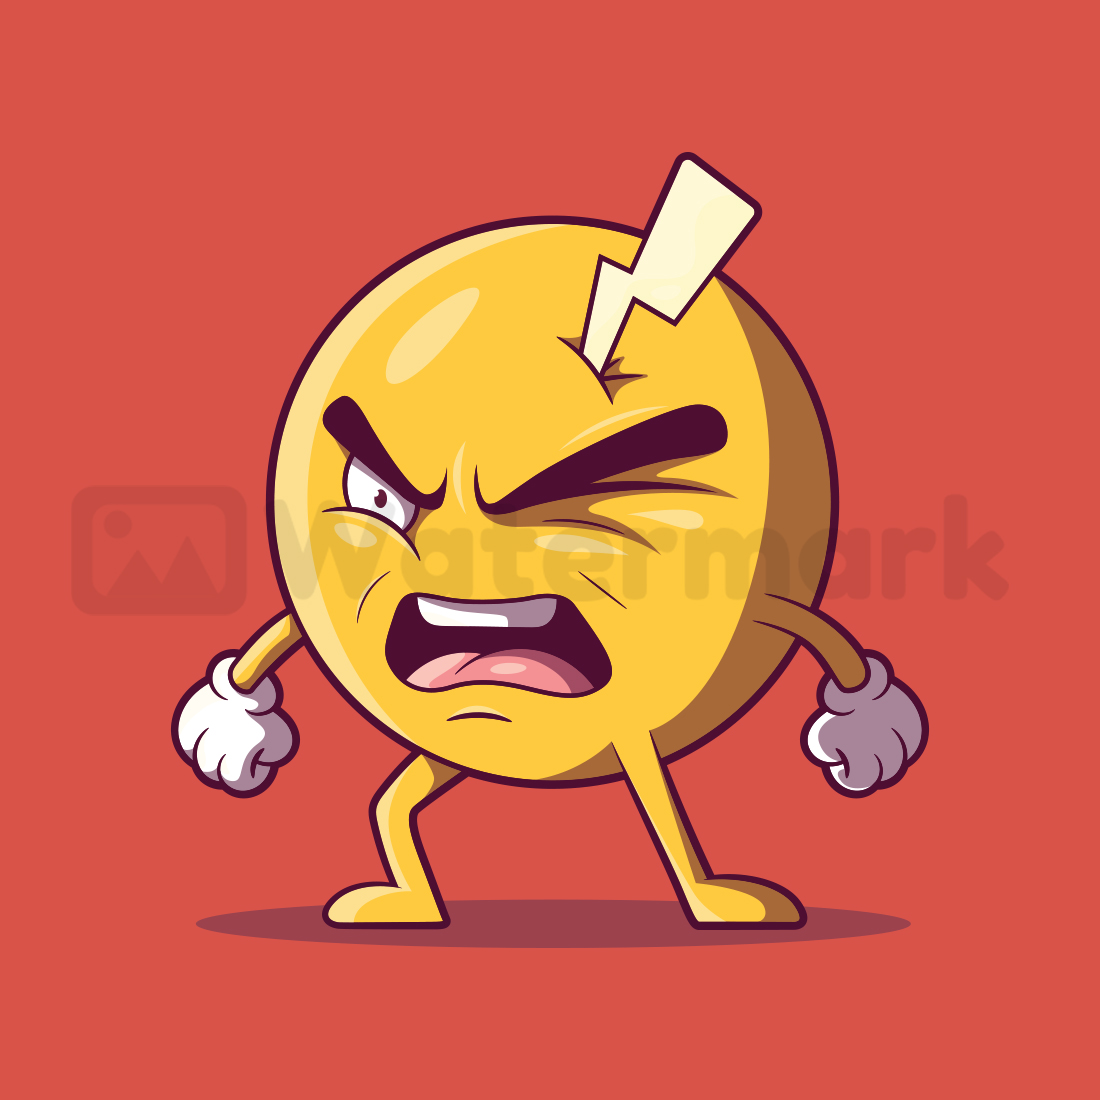 Angry Emoji! cover image.